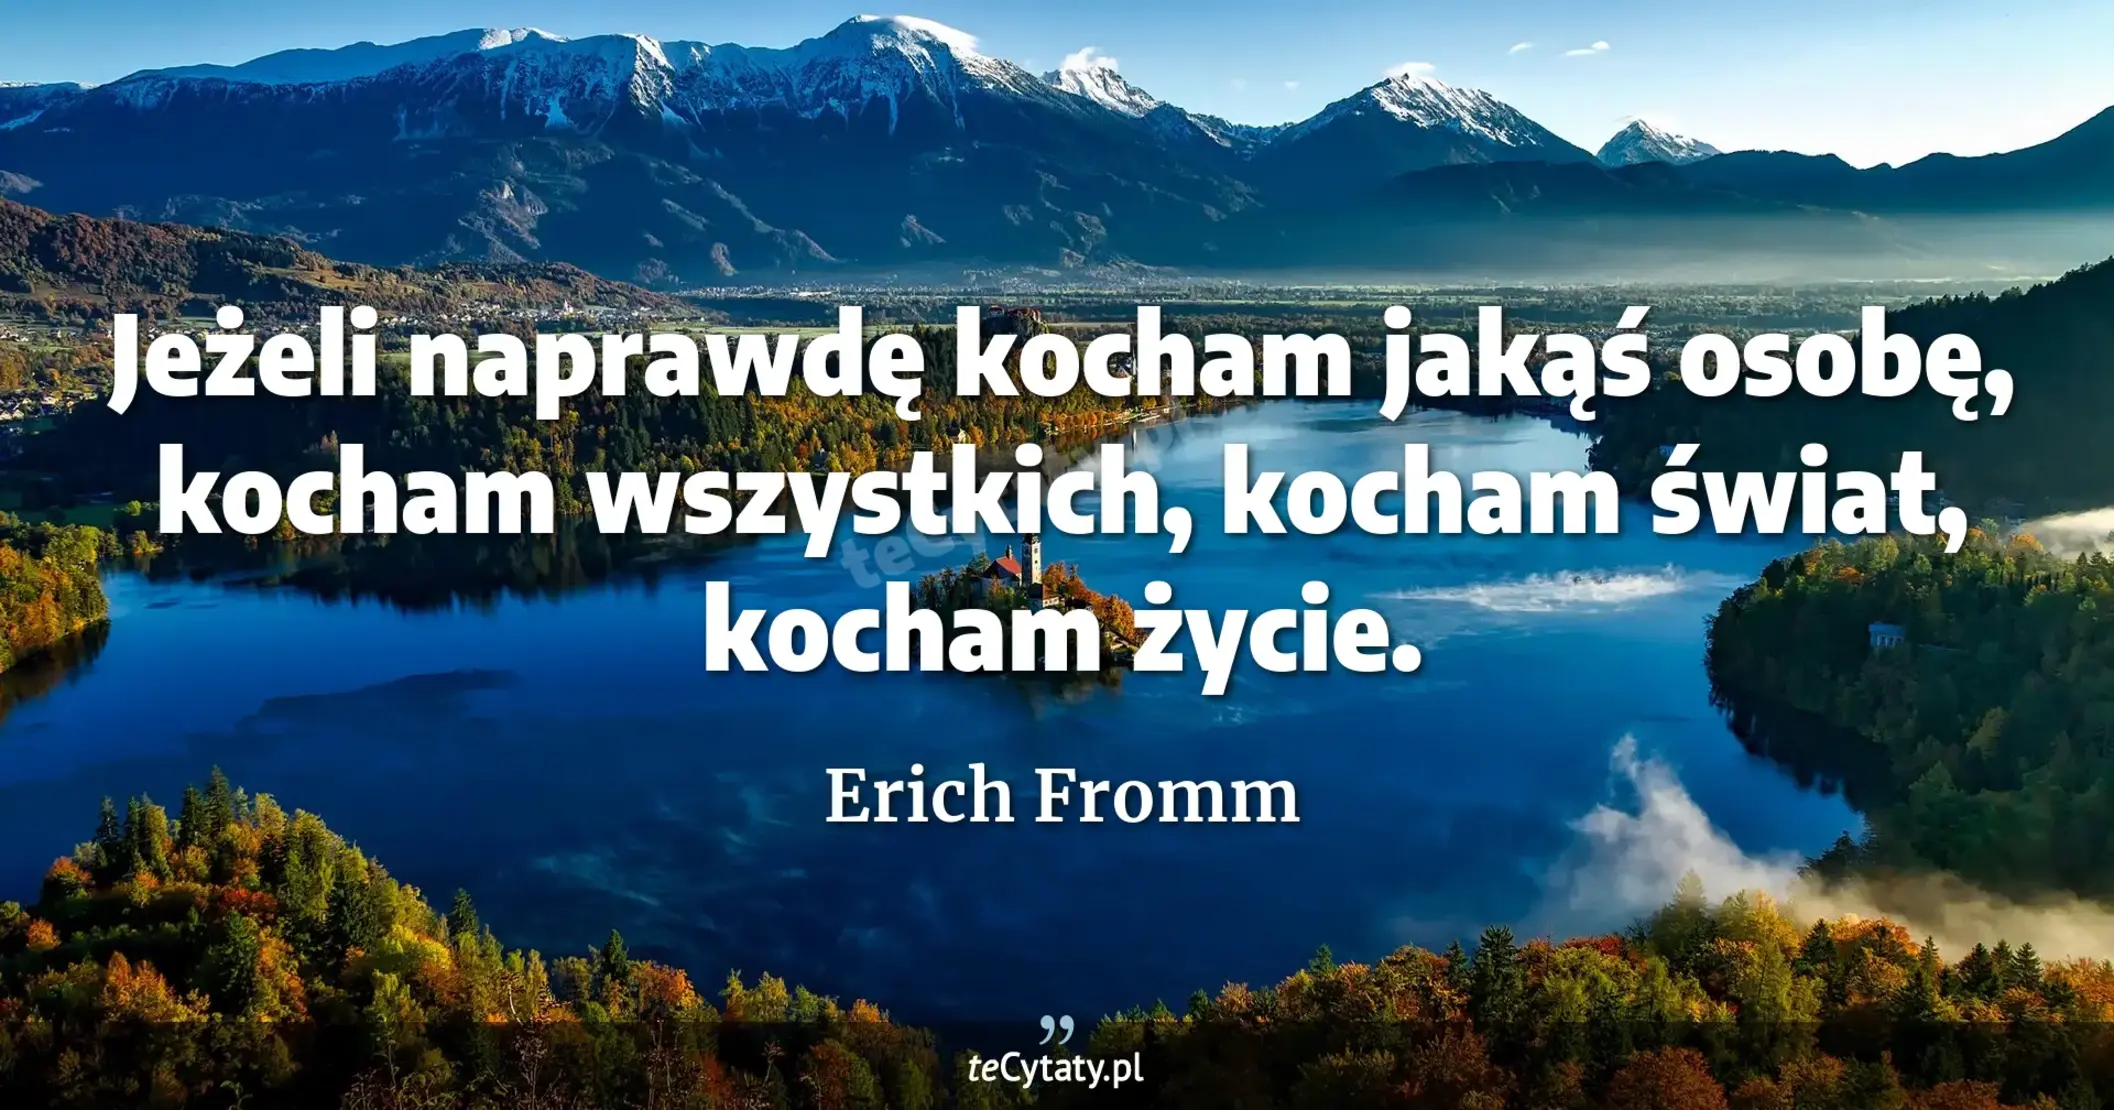 Jeżeli naprawdę kocham jakąś osobę, kocham wszystkich, kocham świat, kocham życie. - Erich Fromm